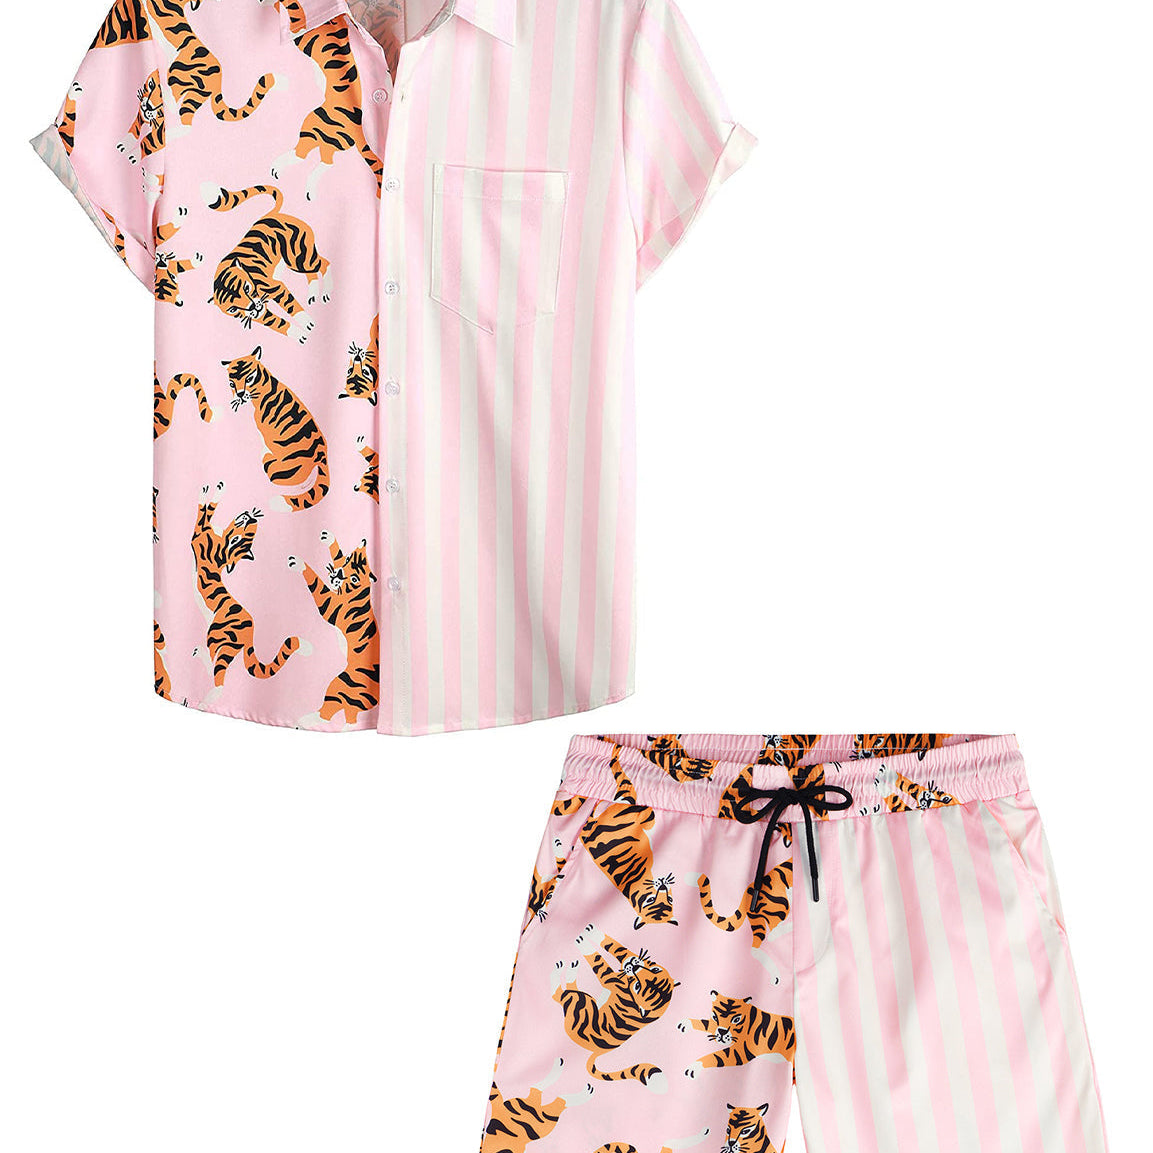 Costume de vacances imprimé flamant rose pour hommes, manches courtes, poche, ensemble chemise et Short assortis